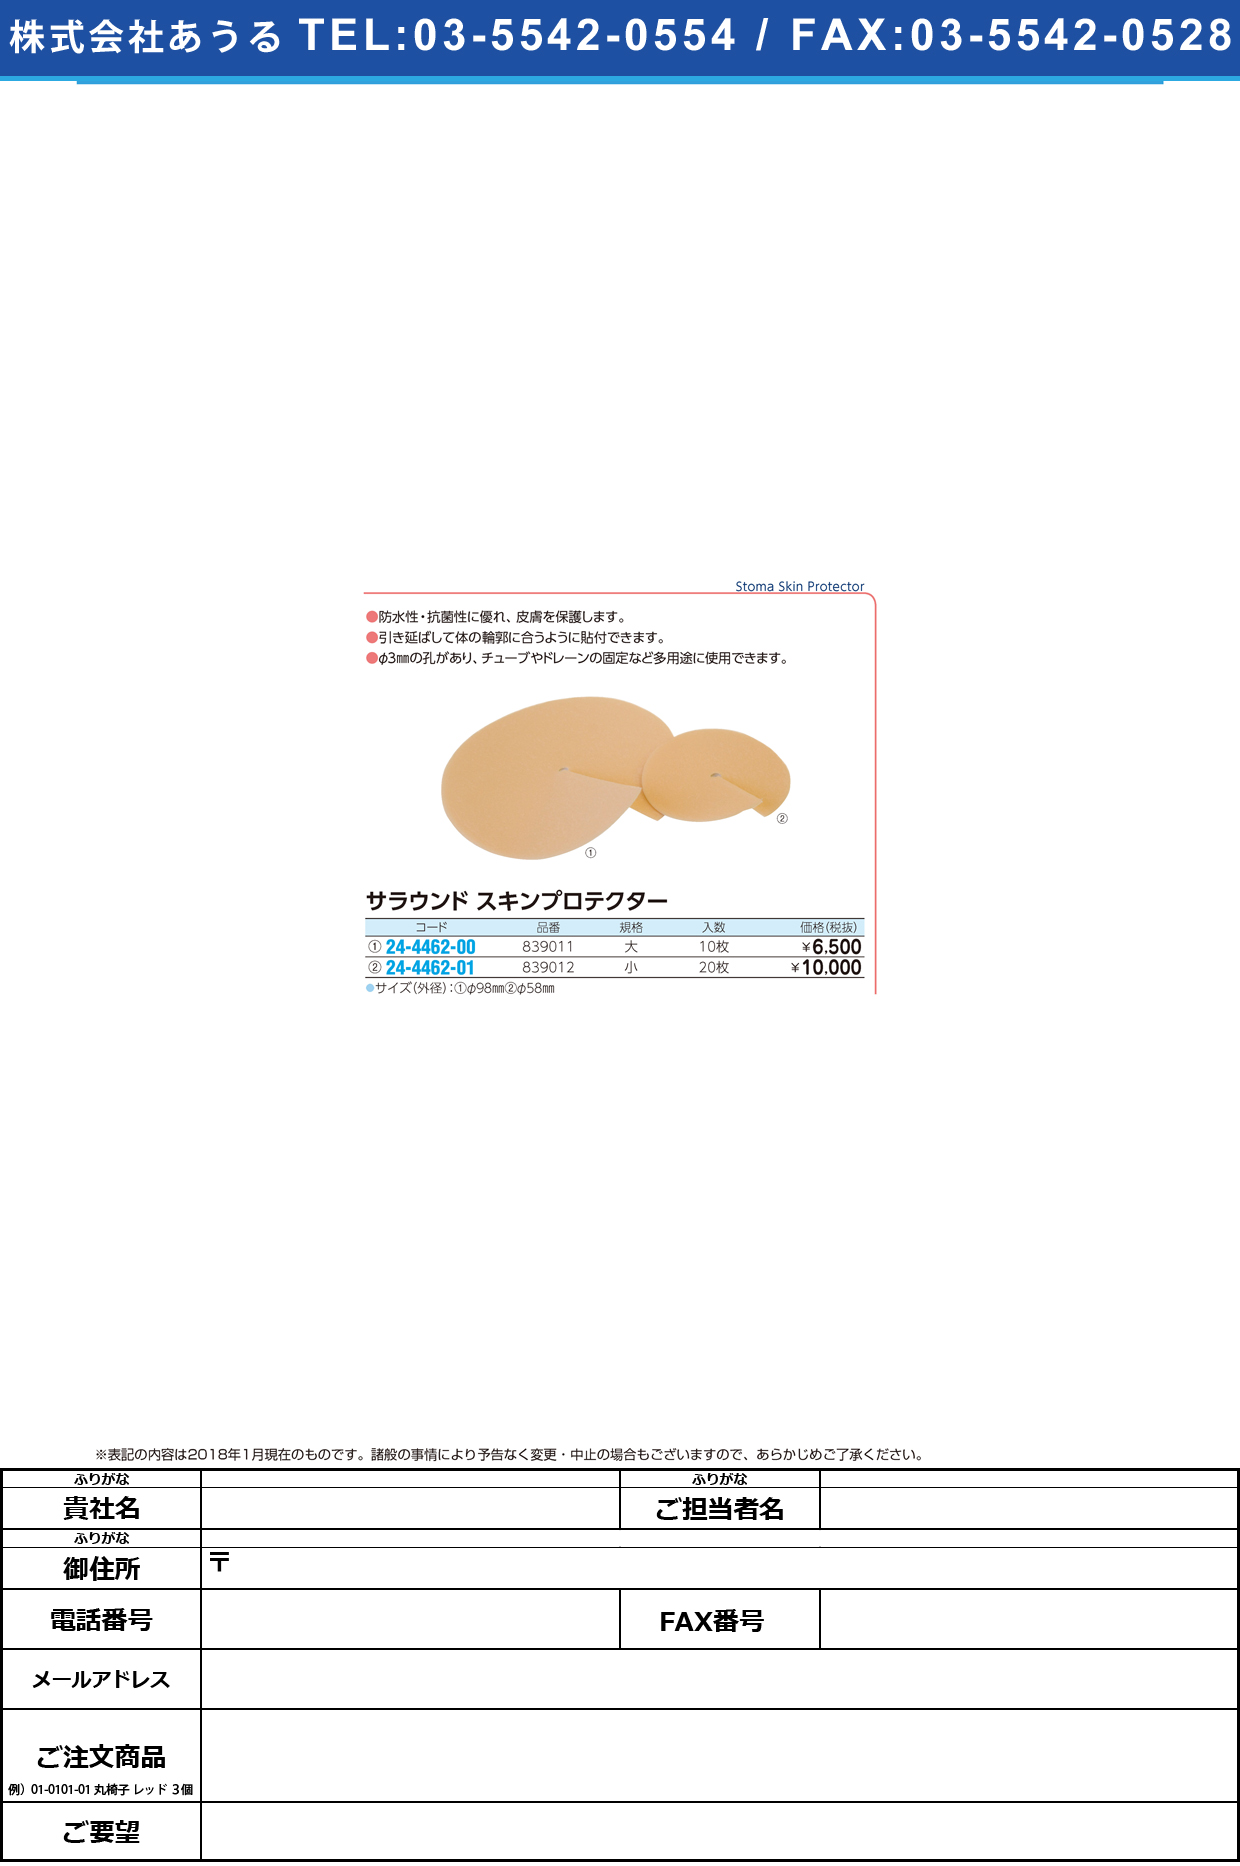 (24-4462-00)サラウンドスキンプロテクター 839011(ﾀﾞｲ)10ﾏｲ ｻﾗｳﾝﾄﾞｽｷﾝﾌﾟﾛﾃｸﾀｰ【1箱単位】【2018年カタログ商品】